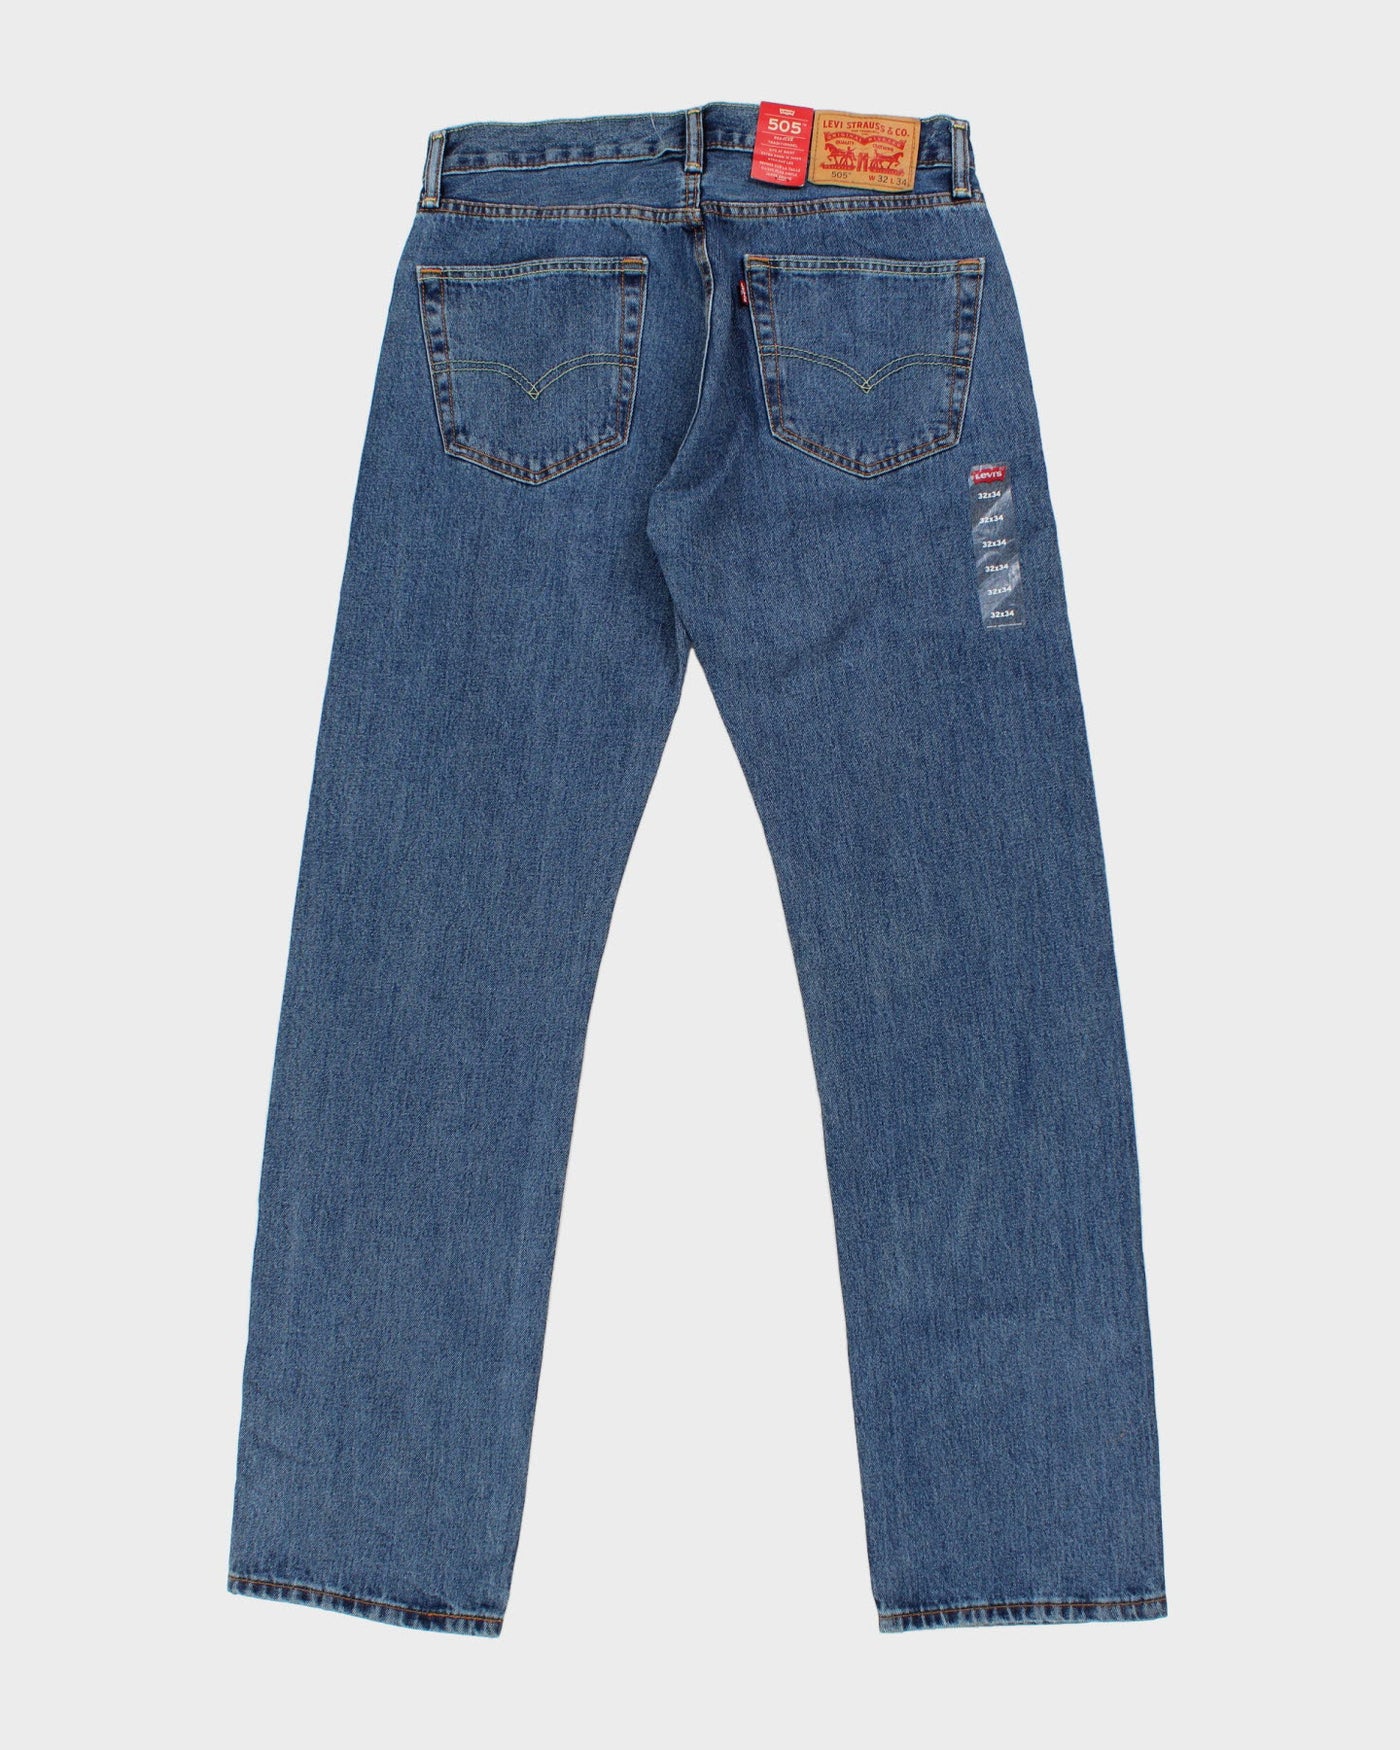 Levi's 505 Medium Wash Jeans - W32 L34